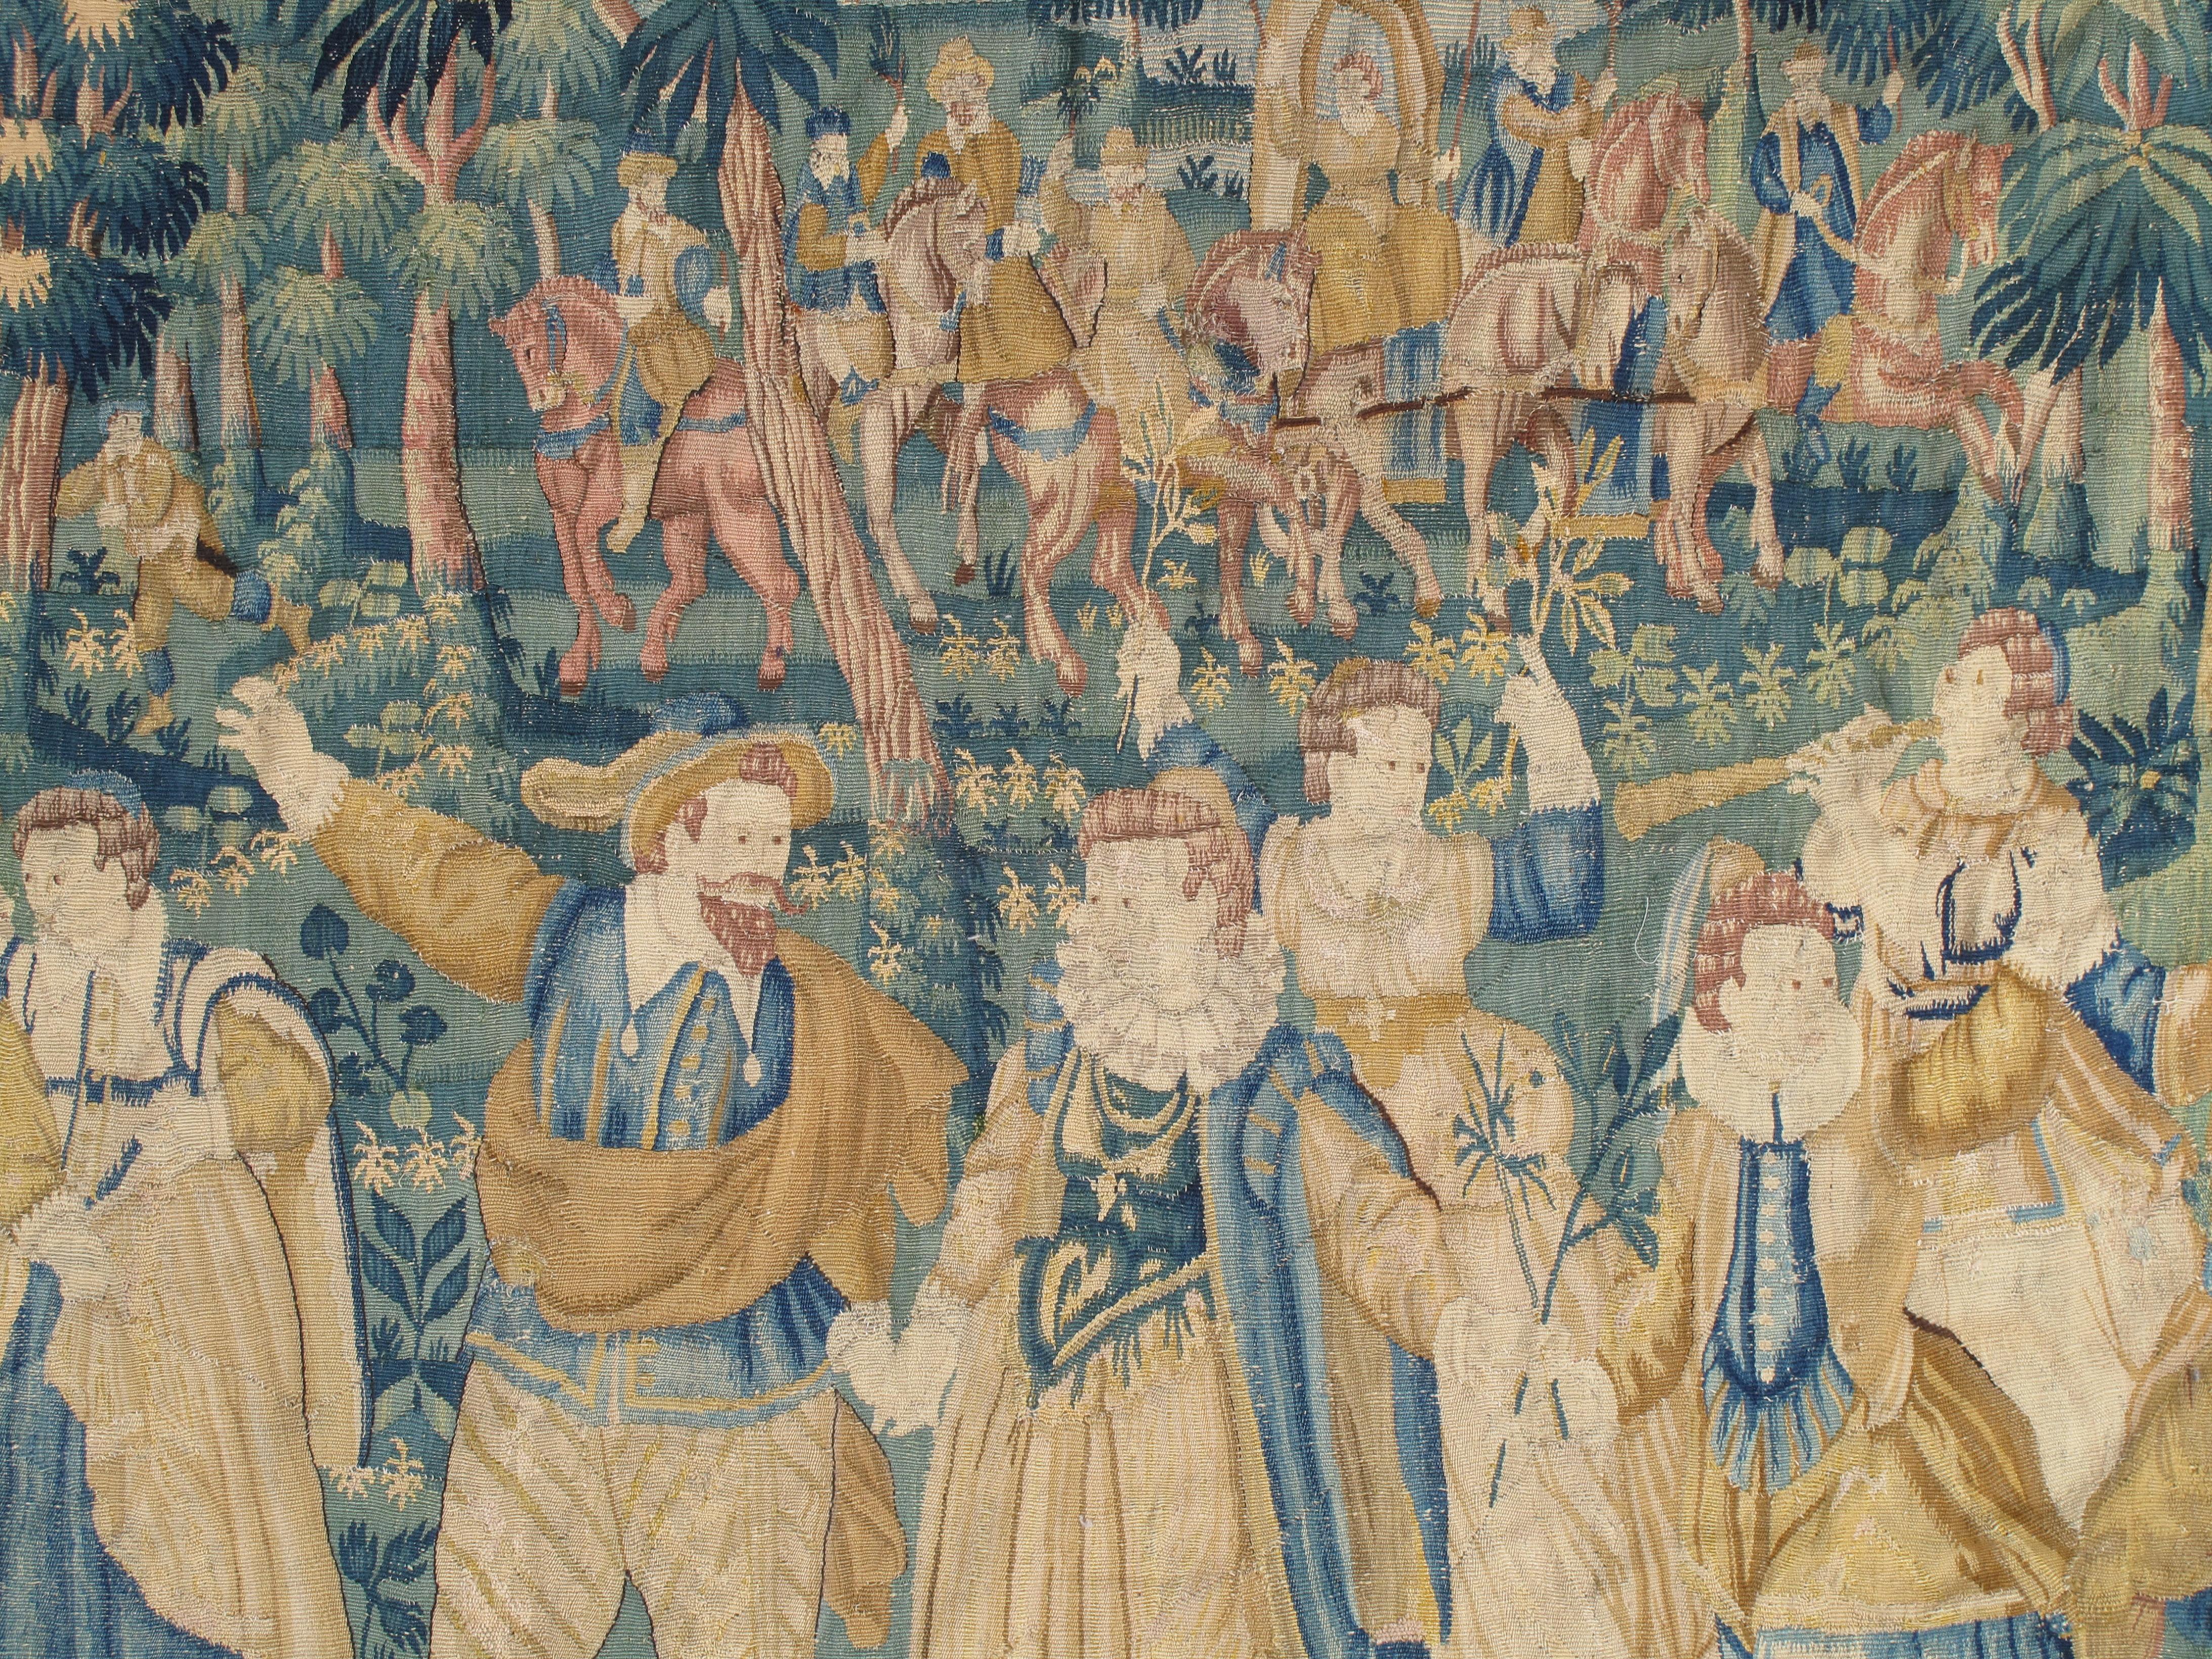 Dieser prächtige Wandteppich wurde in der Mitte der europäischen Renaissance, in den späten 1500er Jahren, in Flandern gewebt. Zu dieser Zeit wurden in Flandern einige der besten Textilien der Welt hergestellt, und viele der reichhaltigen Waldszenen